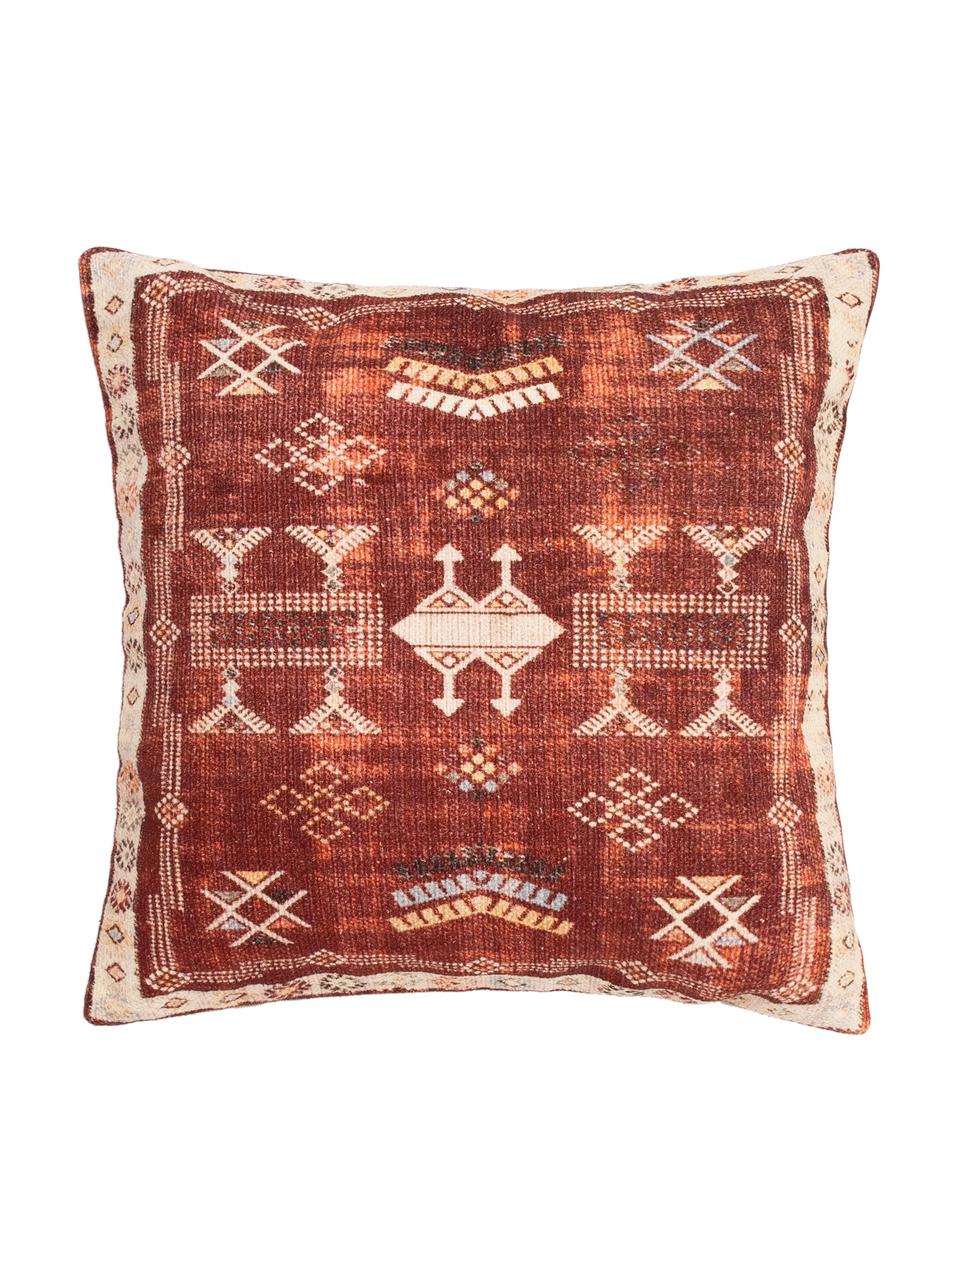 Poszewka na poduszkę Tanger, 100% bawełna, Czerwony, beżowy, S 45 x D 45 cm